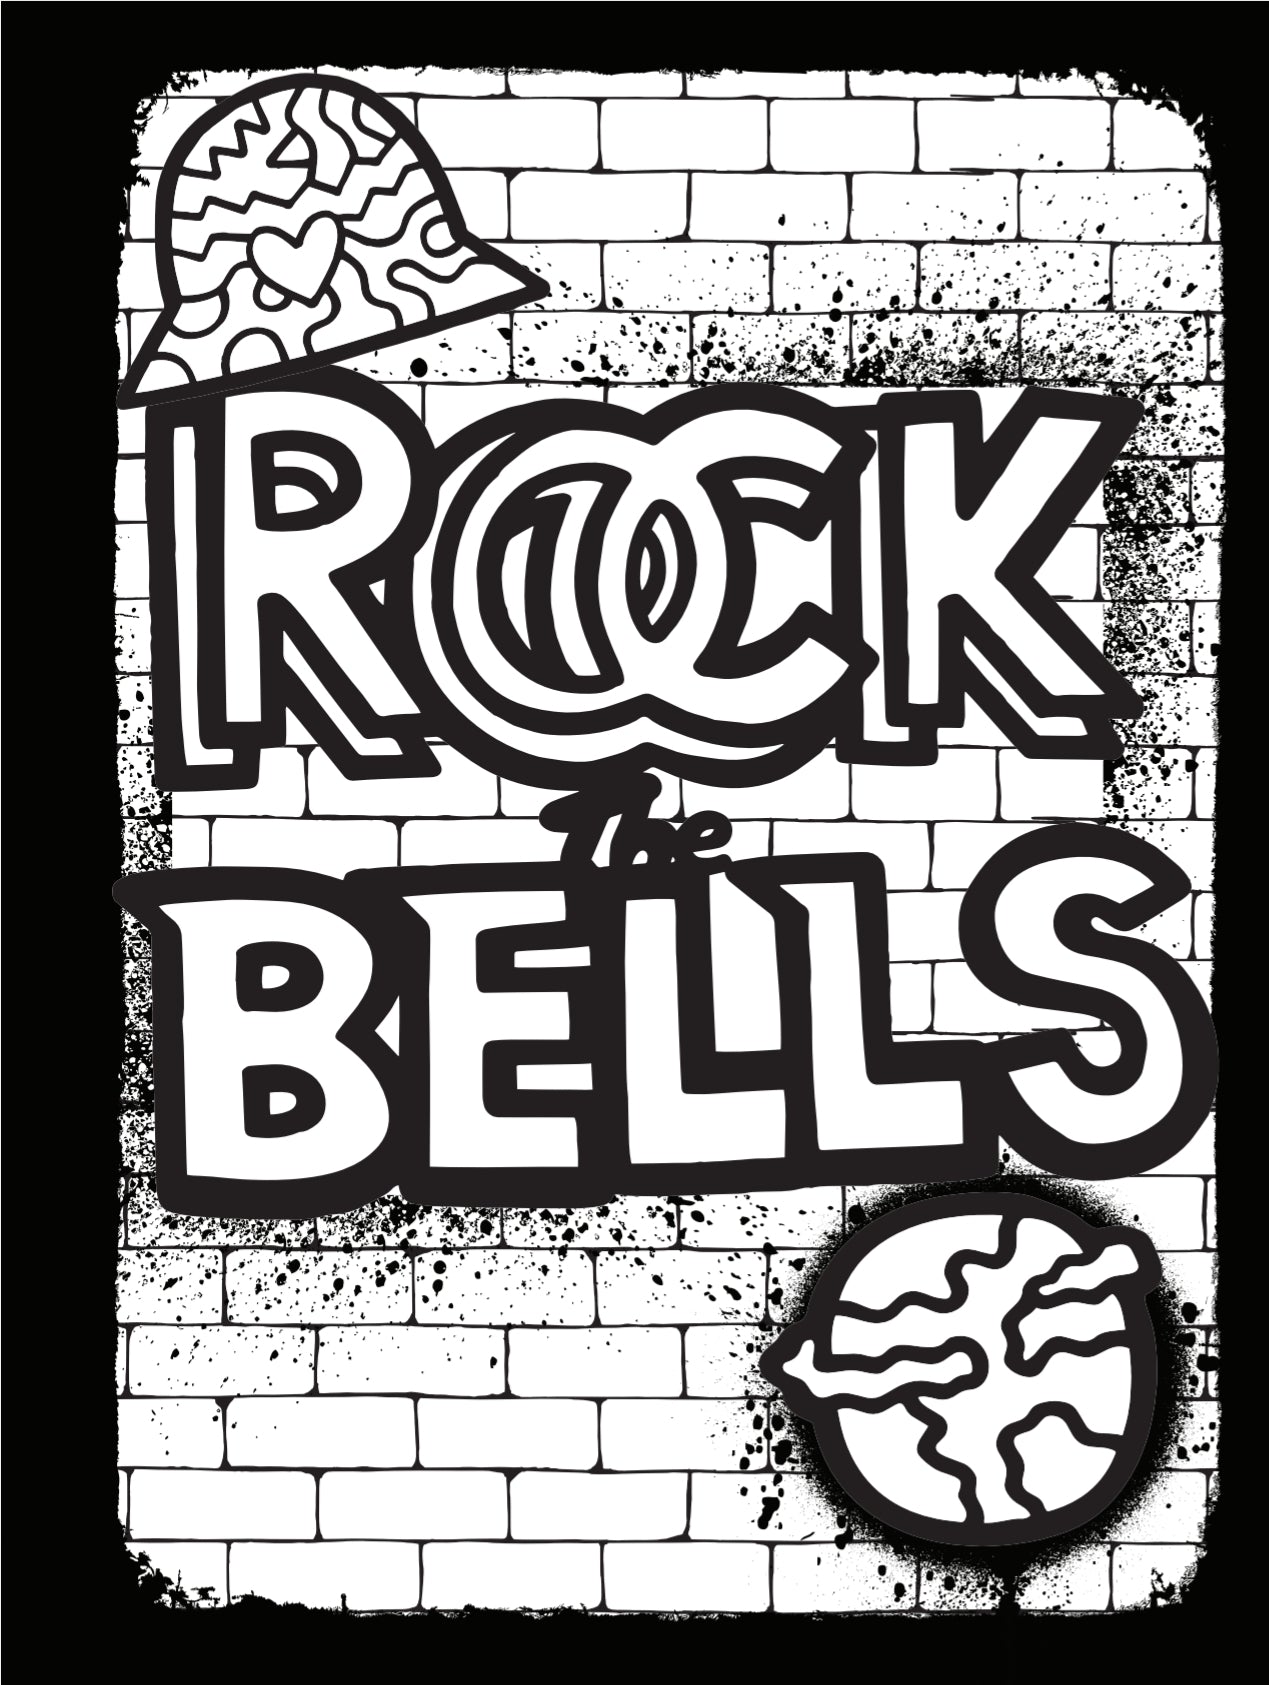 Rock The Bells x World of EPI Kids' Hustle Coloring Book